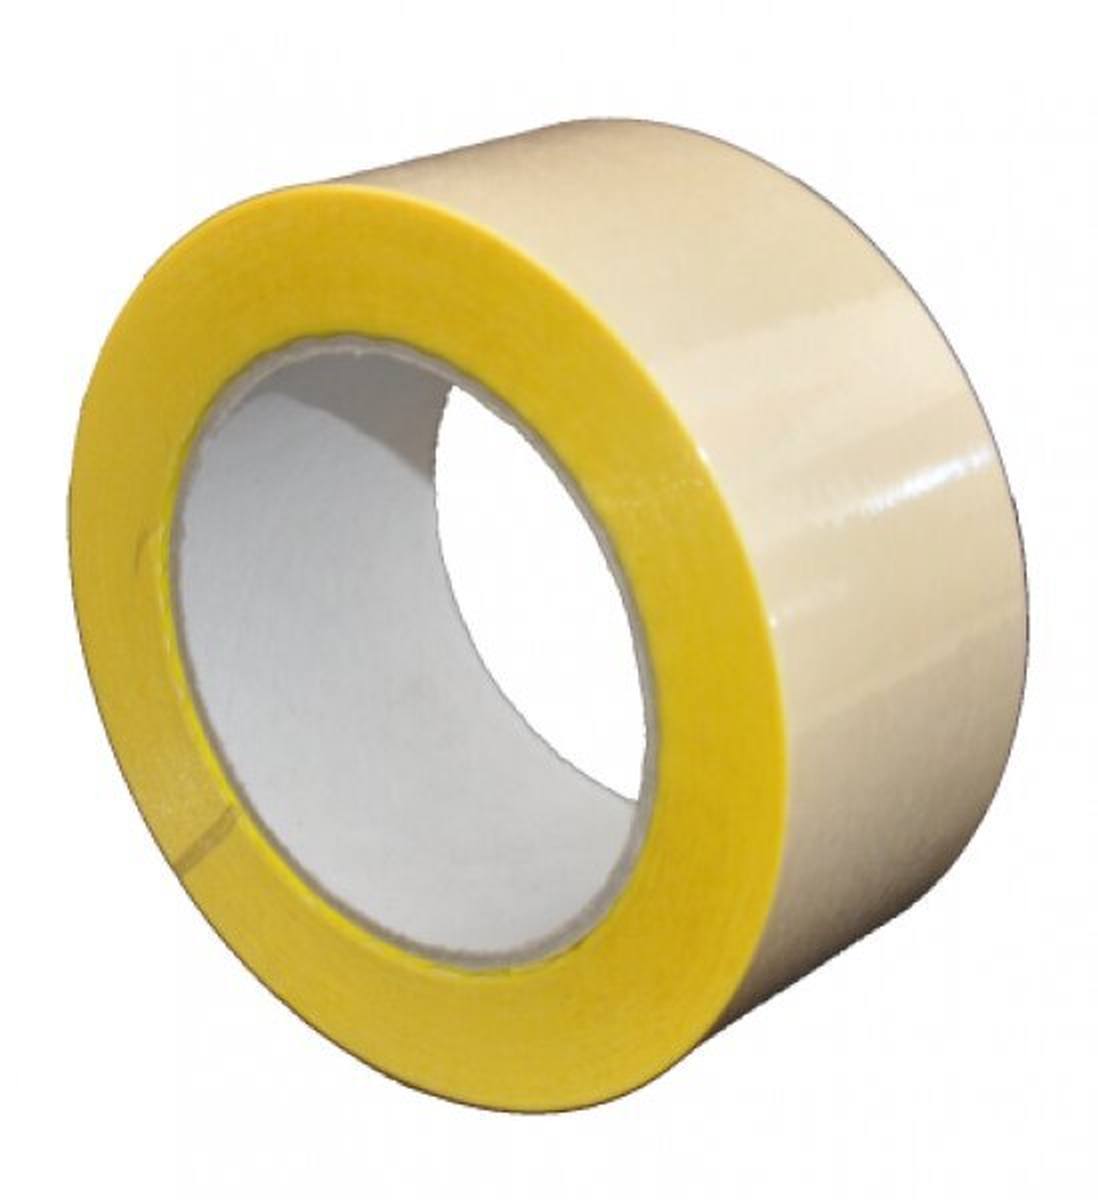 S-K-S 407 Cinta adhesiva de doble cara con soporte de polipropileno, alta / baja adhesividad, amarilla, 500 mm x 50 m, 0,15 mm